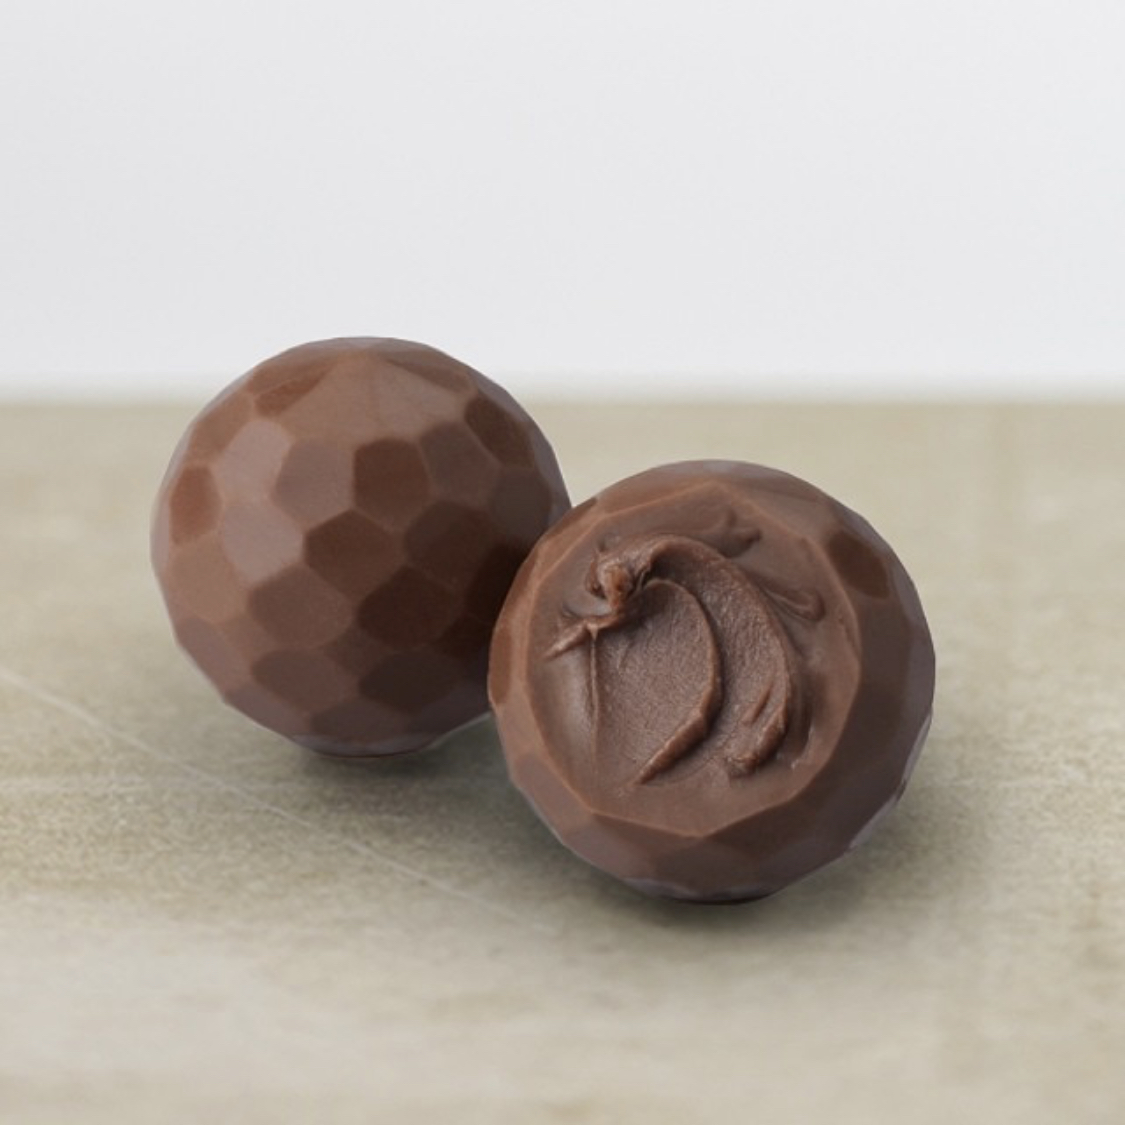 Шоколадные конфеты Delaviuda из молочного шоколада "Рождественская елка" 160 гр.